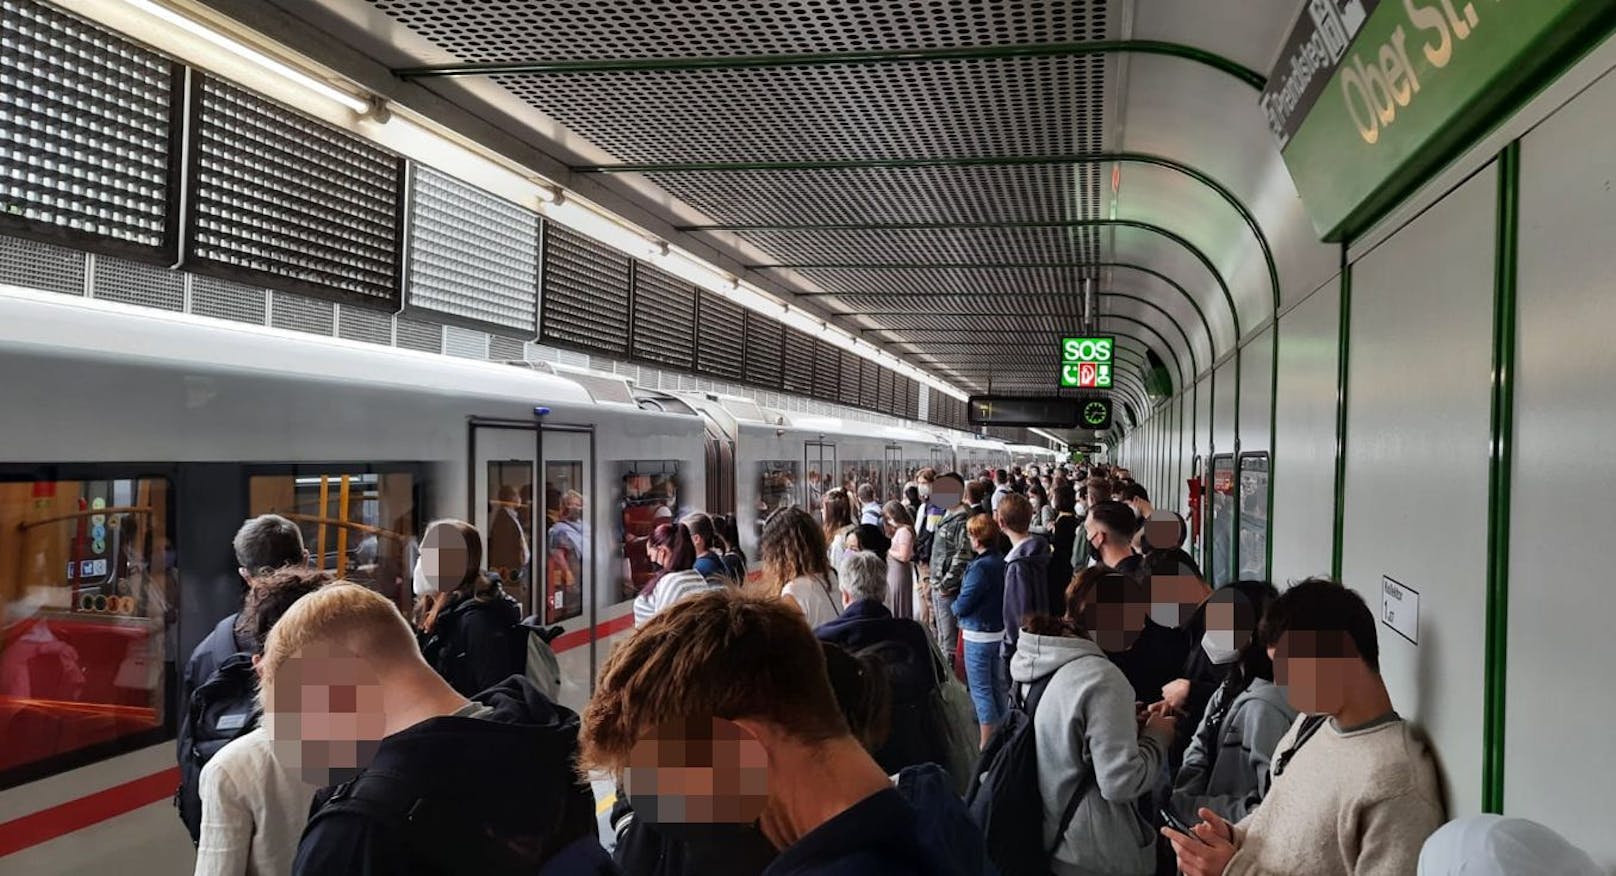 Und er ist nicht der einzige Fahrgast, der seit längerer Zeit auf eine U4 wartet. "Es stehen hunderte Menschen an den Bahnsteigen. Alle sind gestresst, weil sie verspätet in die Arbeit oder in die Schule kommen", so der Wiener weiter. Nach 25 Minuten schaffte es der 30-Jährige schließlich in eine U-Bahn.